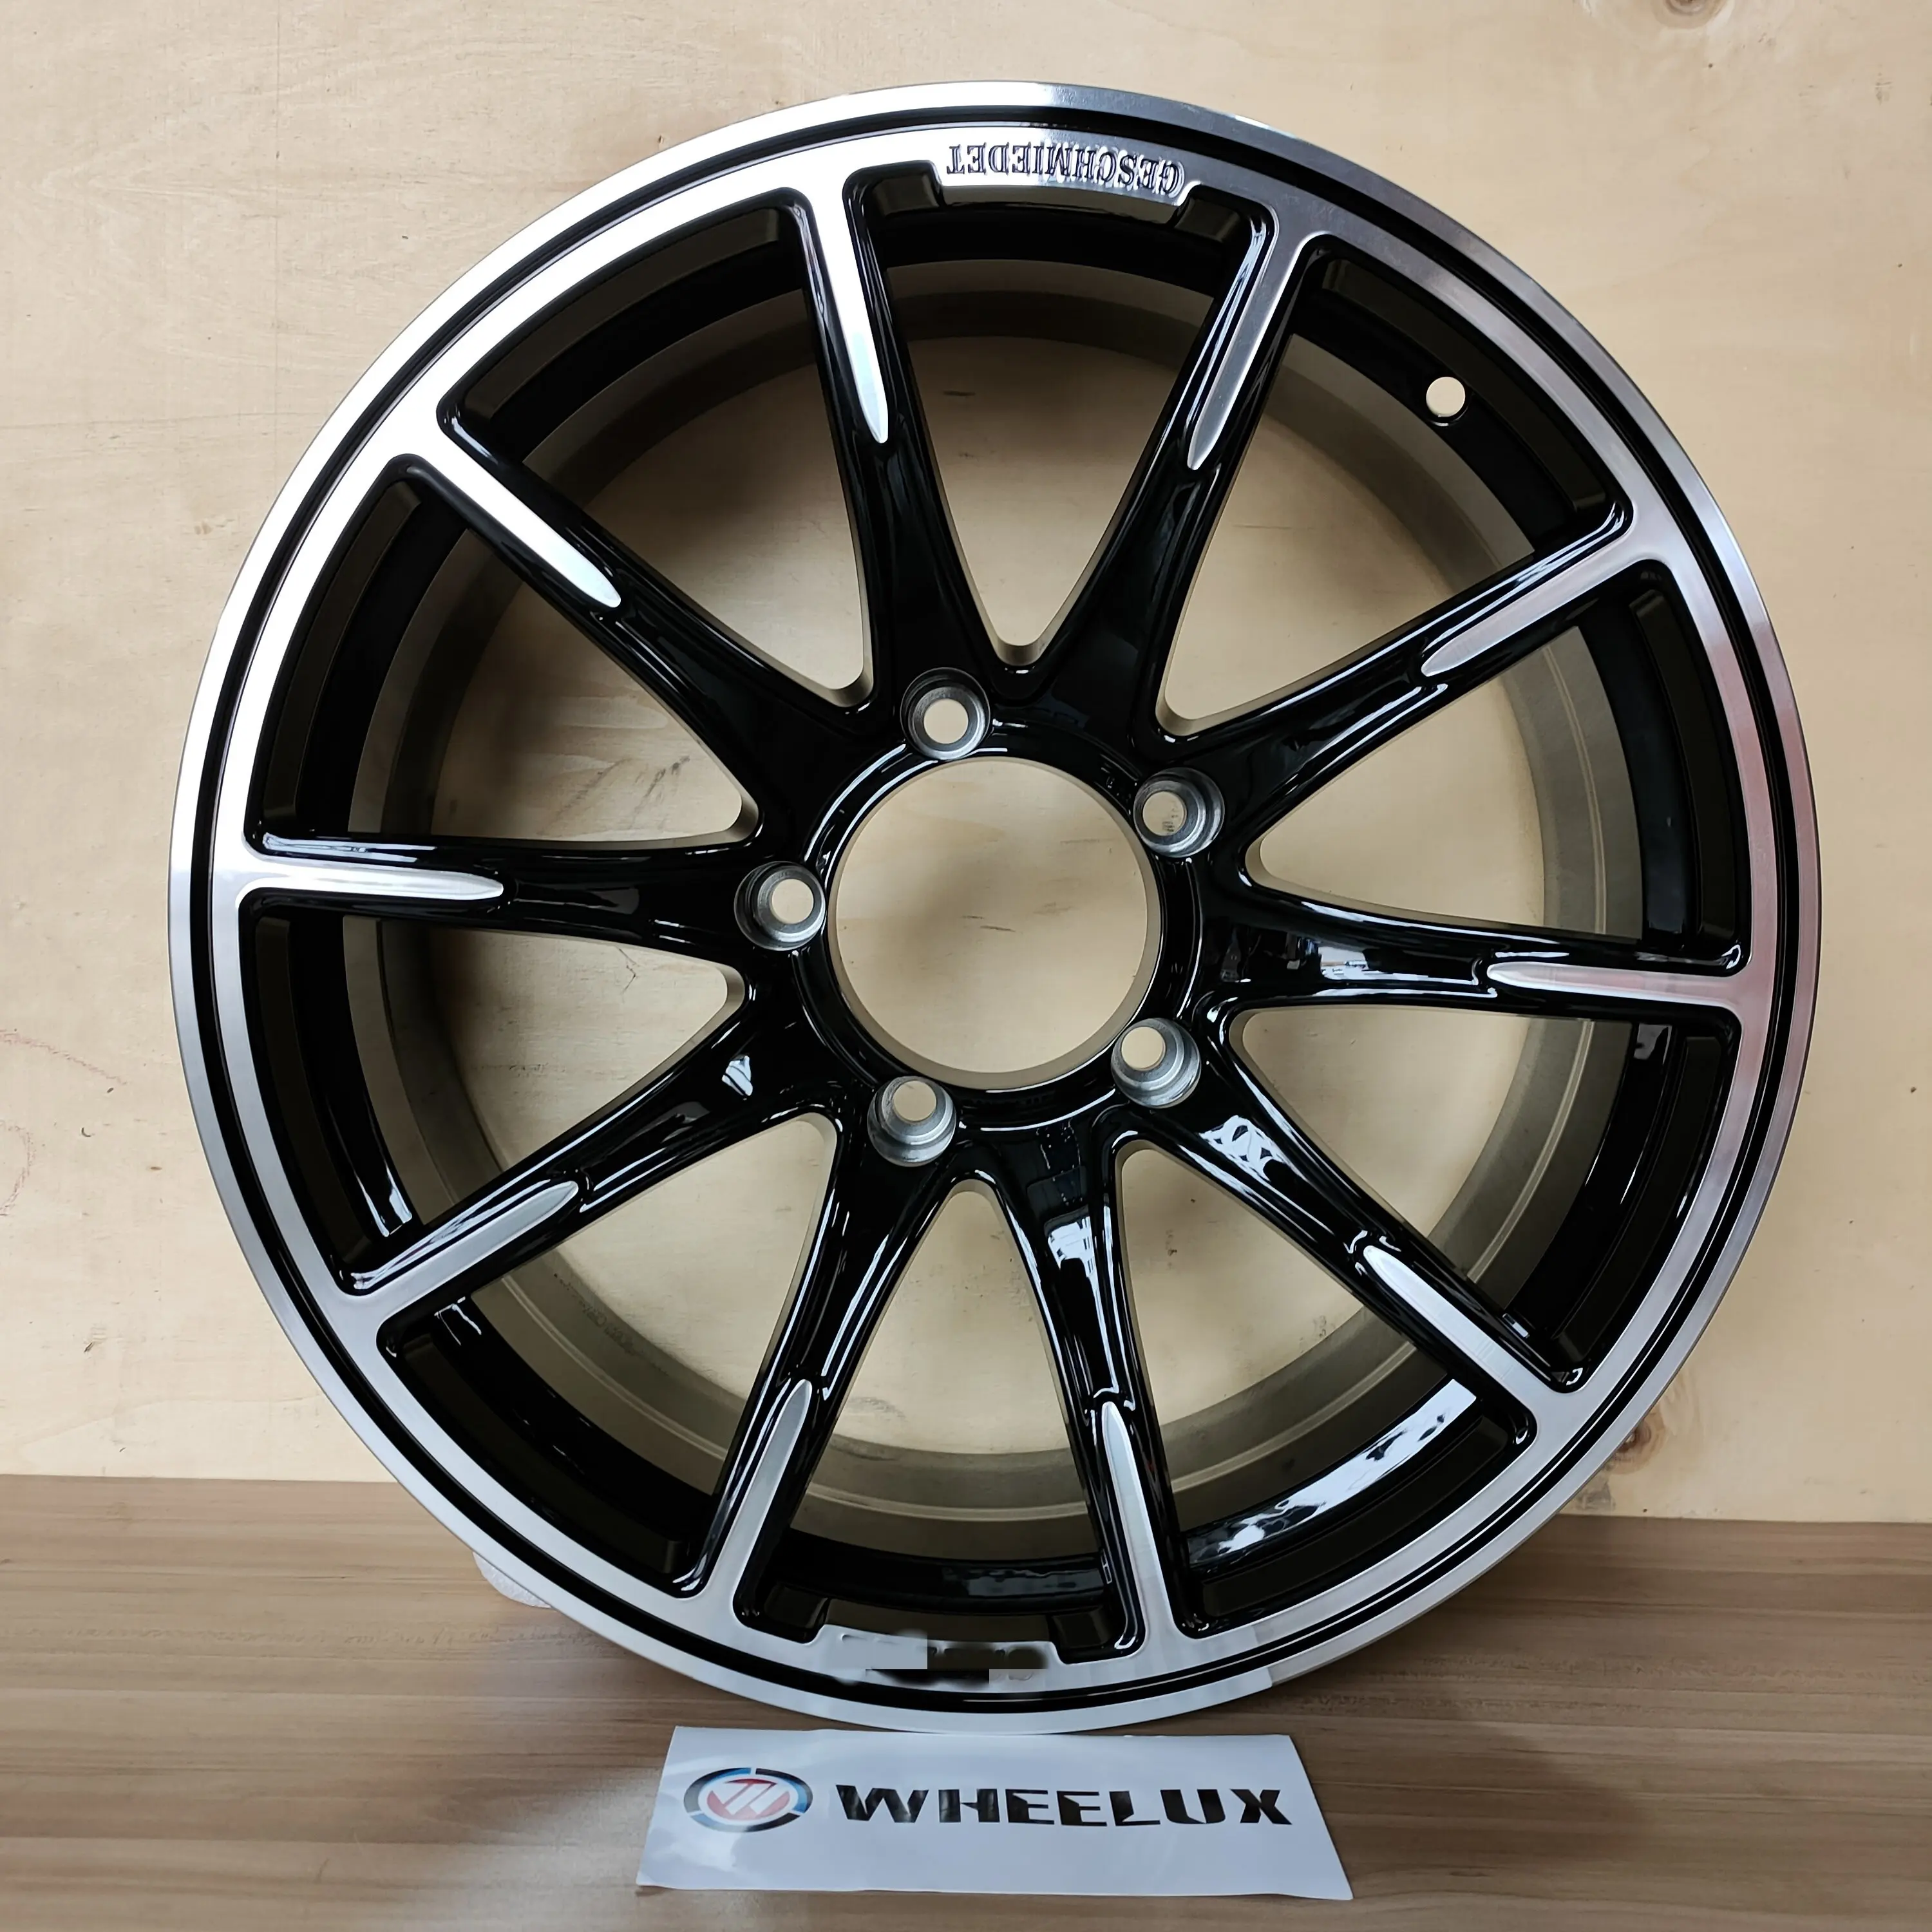 Wheelux-llantas de aleación de aluminio 5x139,7 para suzuki jimny hub, llantas de aleación de aluminio de 17, 18, 19 y 20 pulgadas, color negro brillante